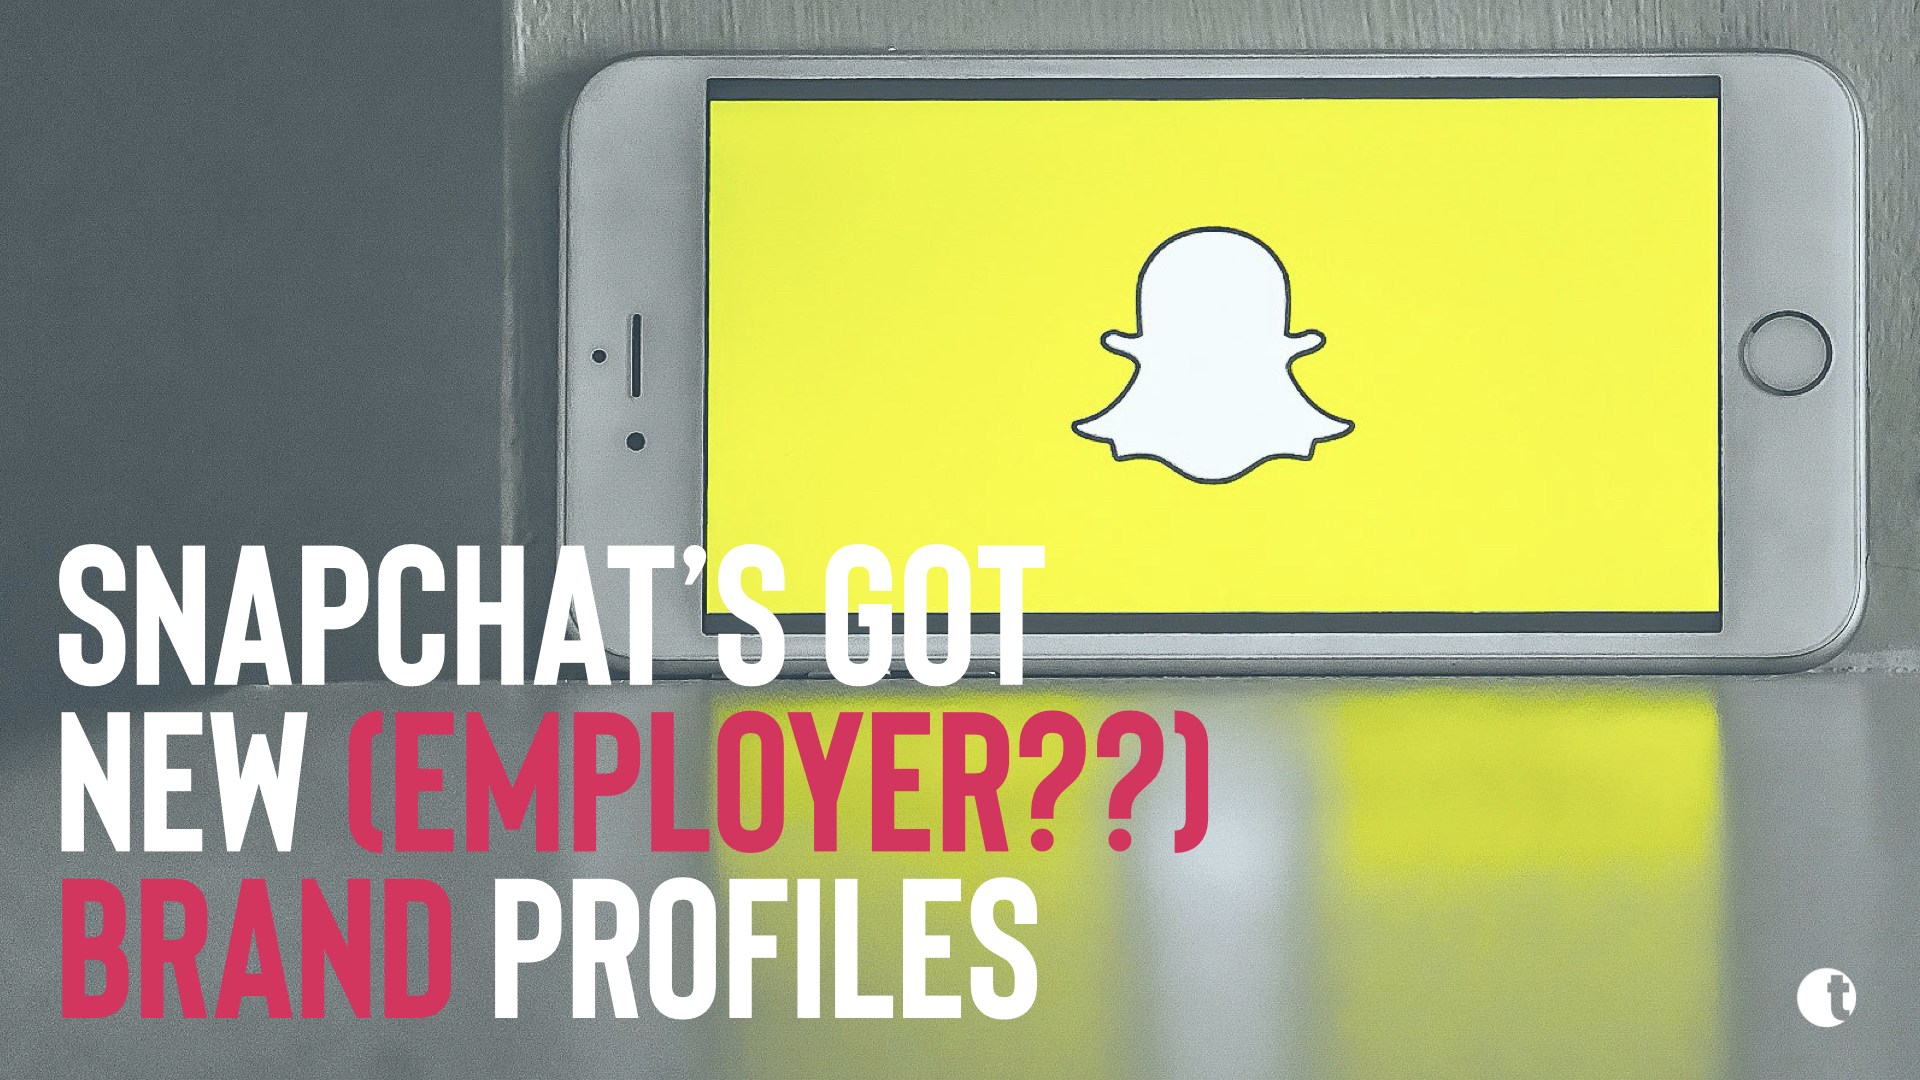 Snapchat (employer?) brand profiles